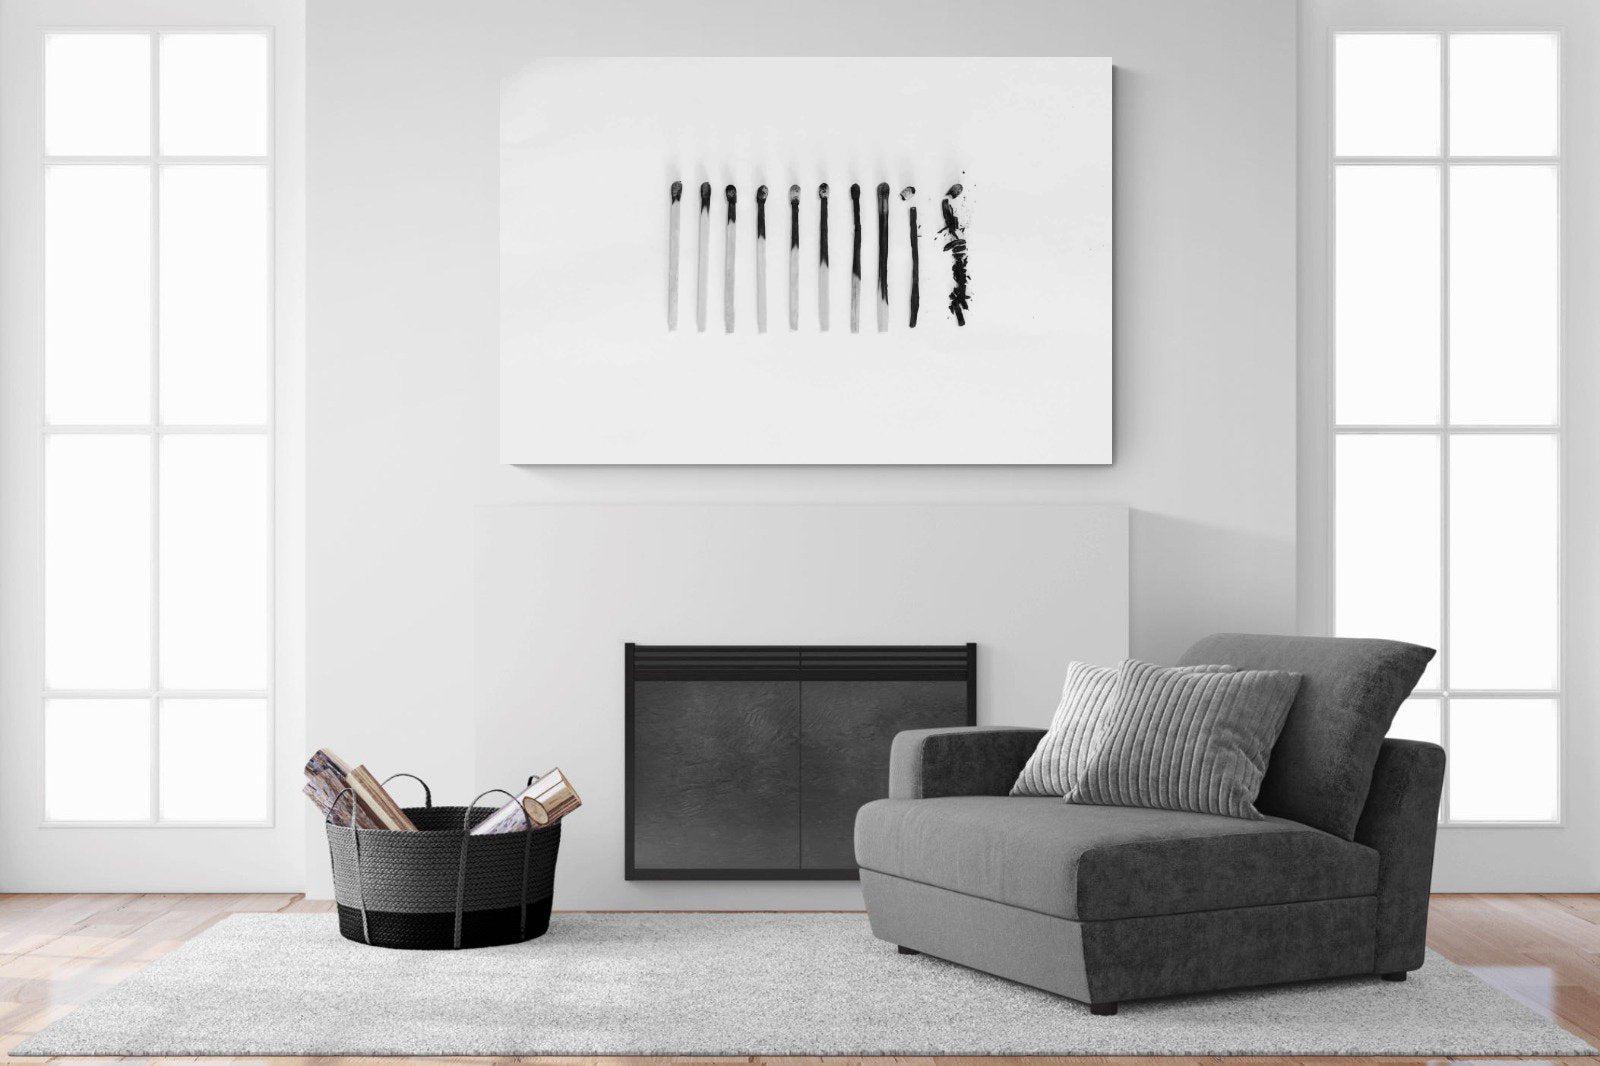 Matchsticks-Wall_Art-150 x 100cm-Mounted Canvas-No Frame-Pixalot